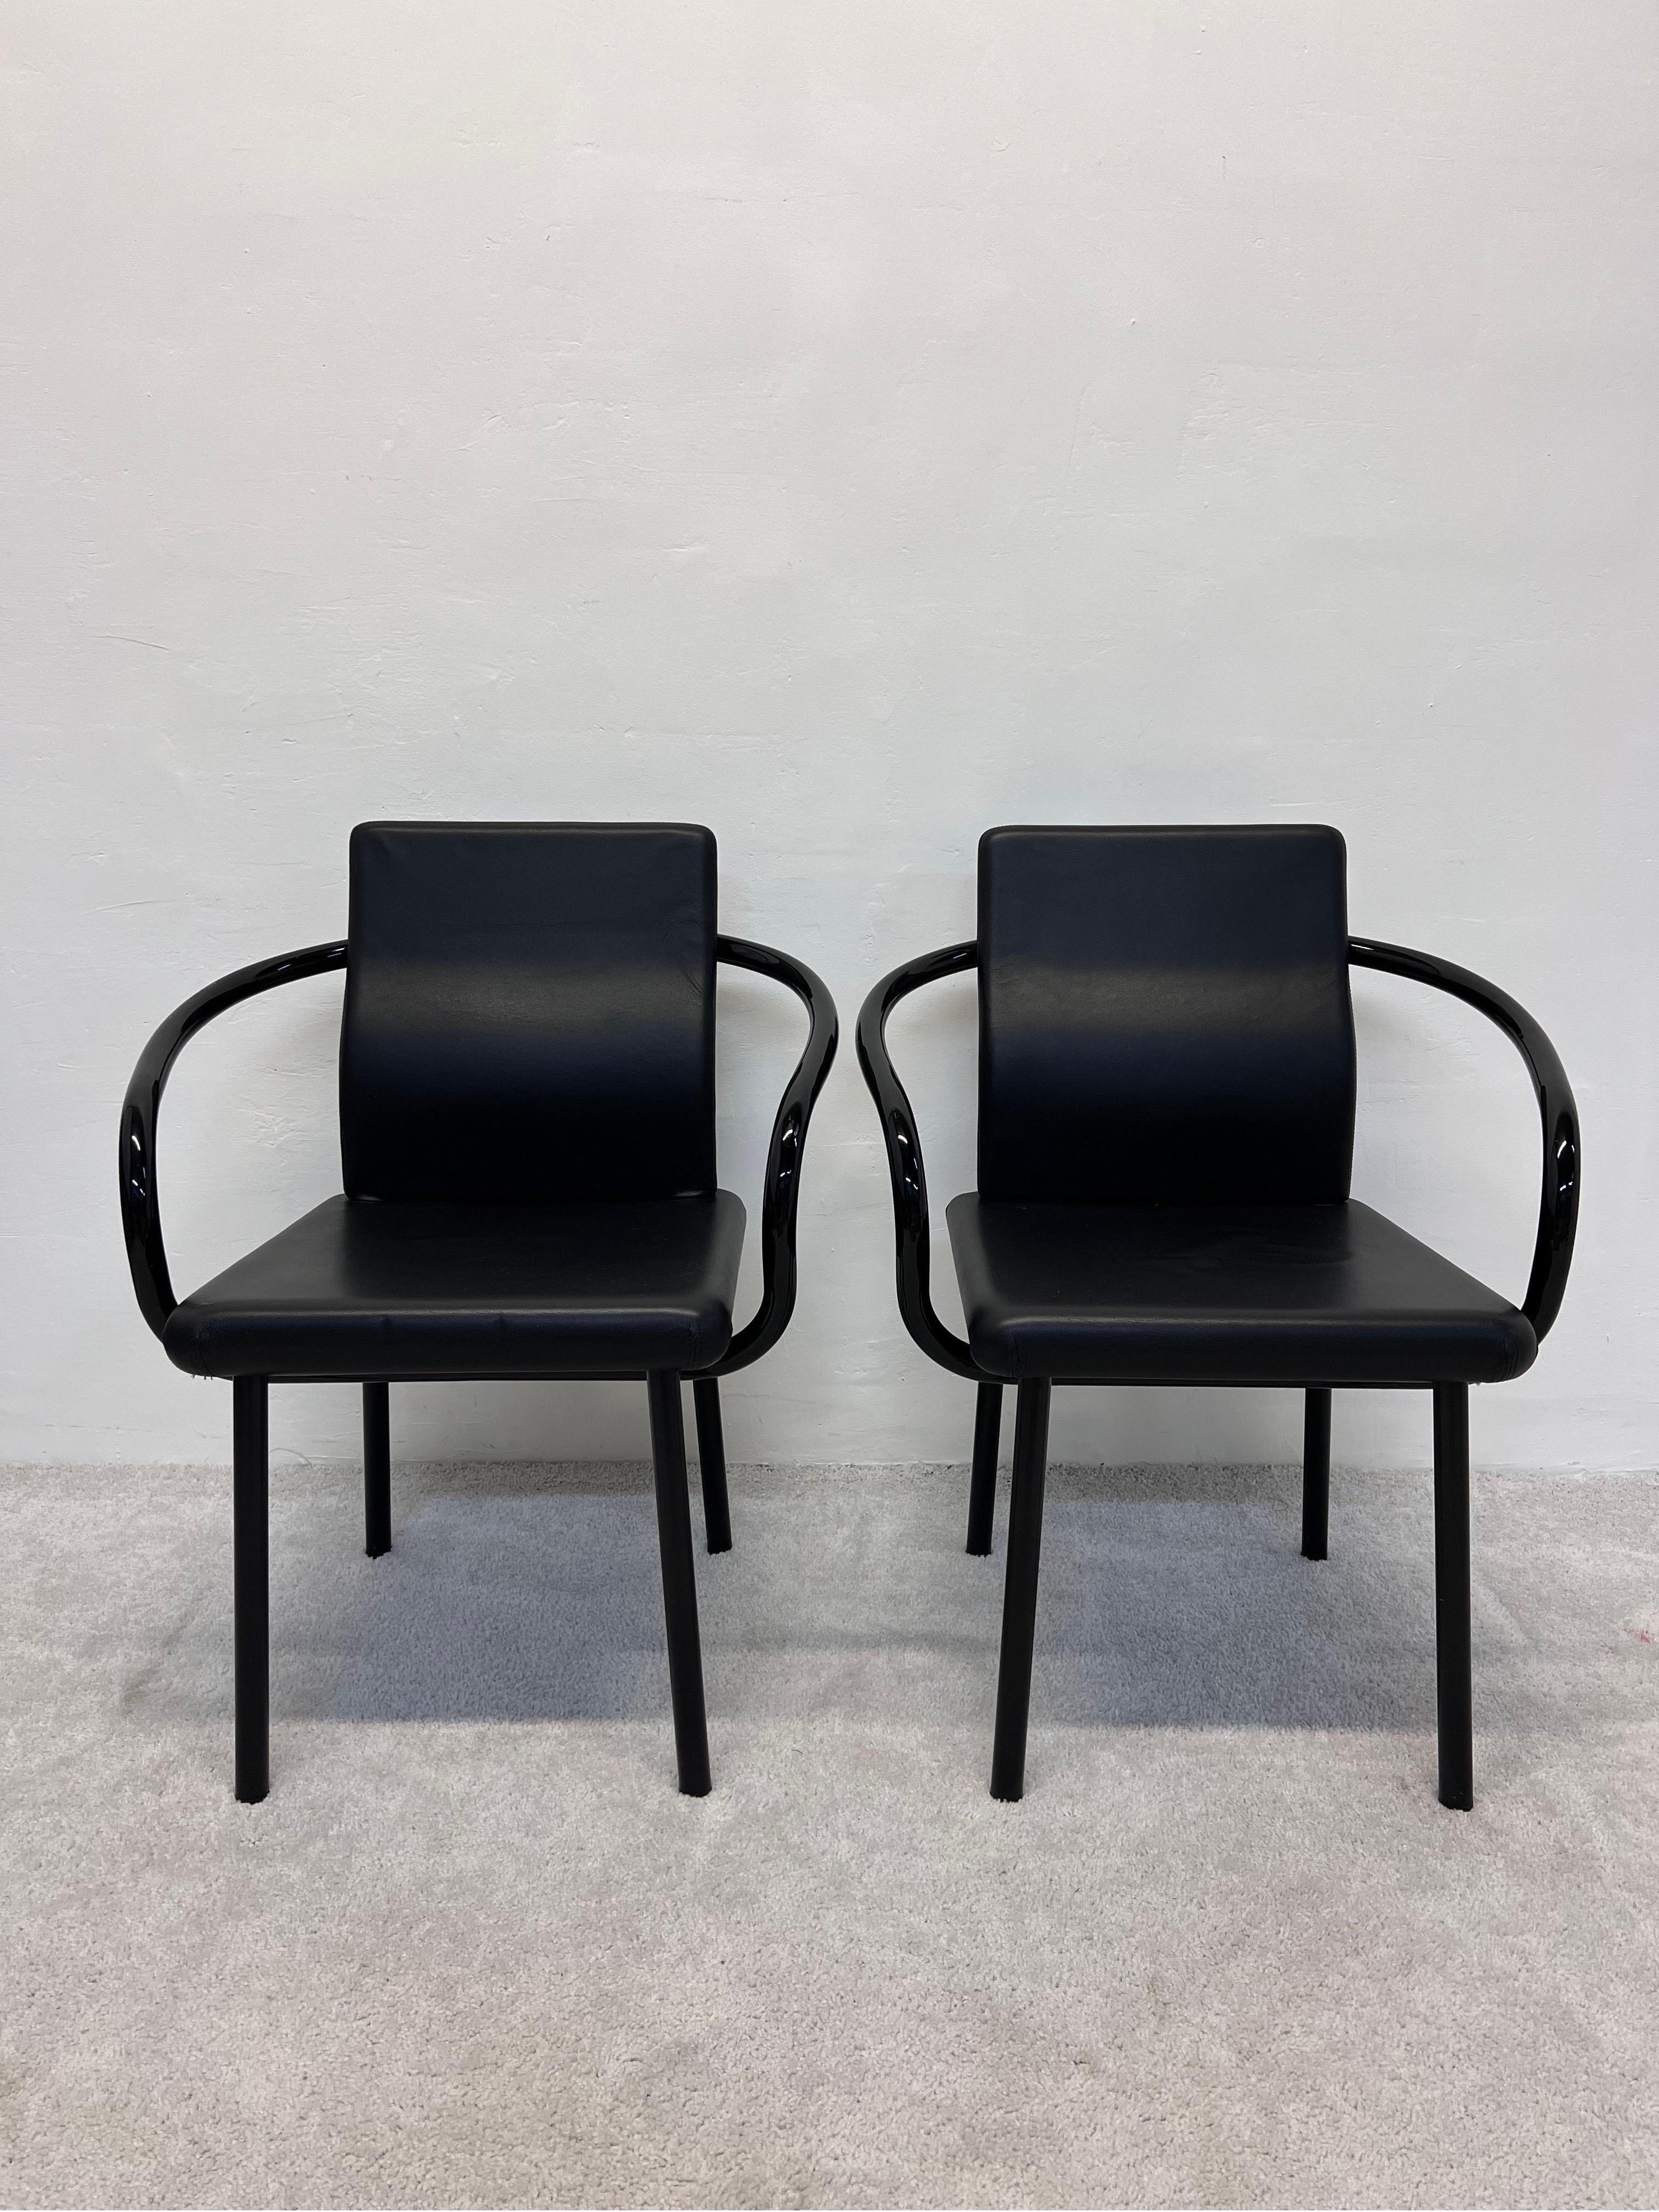 Memphis Postmoderne Mandarin-Stühle mit schwarz lackiertem Stahlgestell und gepolsterten Sitzen aus schwarzem Naugahyde, entworfen von Ettore Sottsass für Knoll.